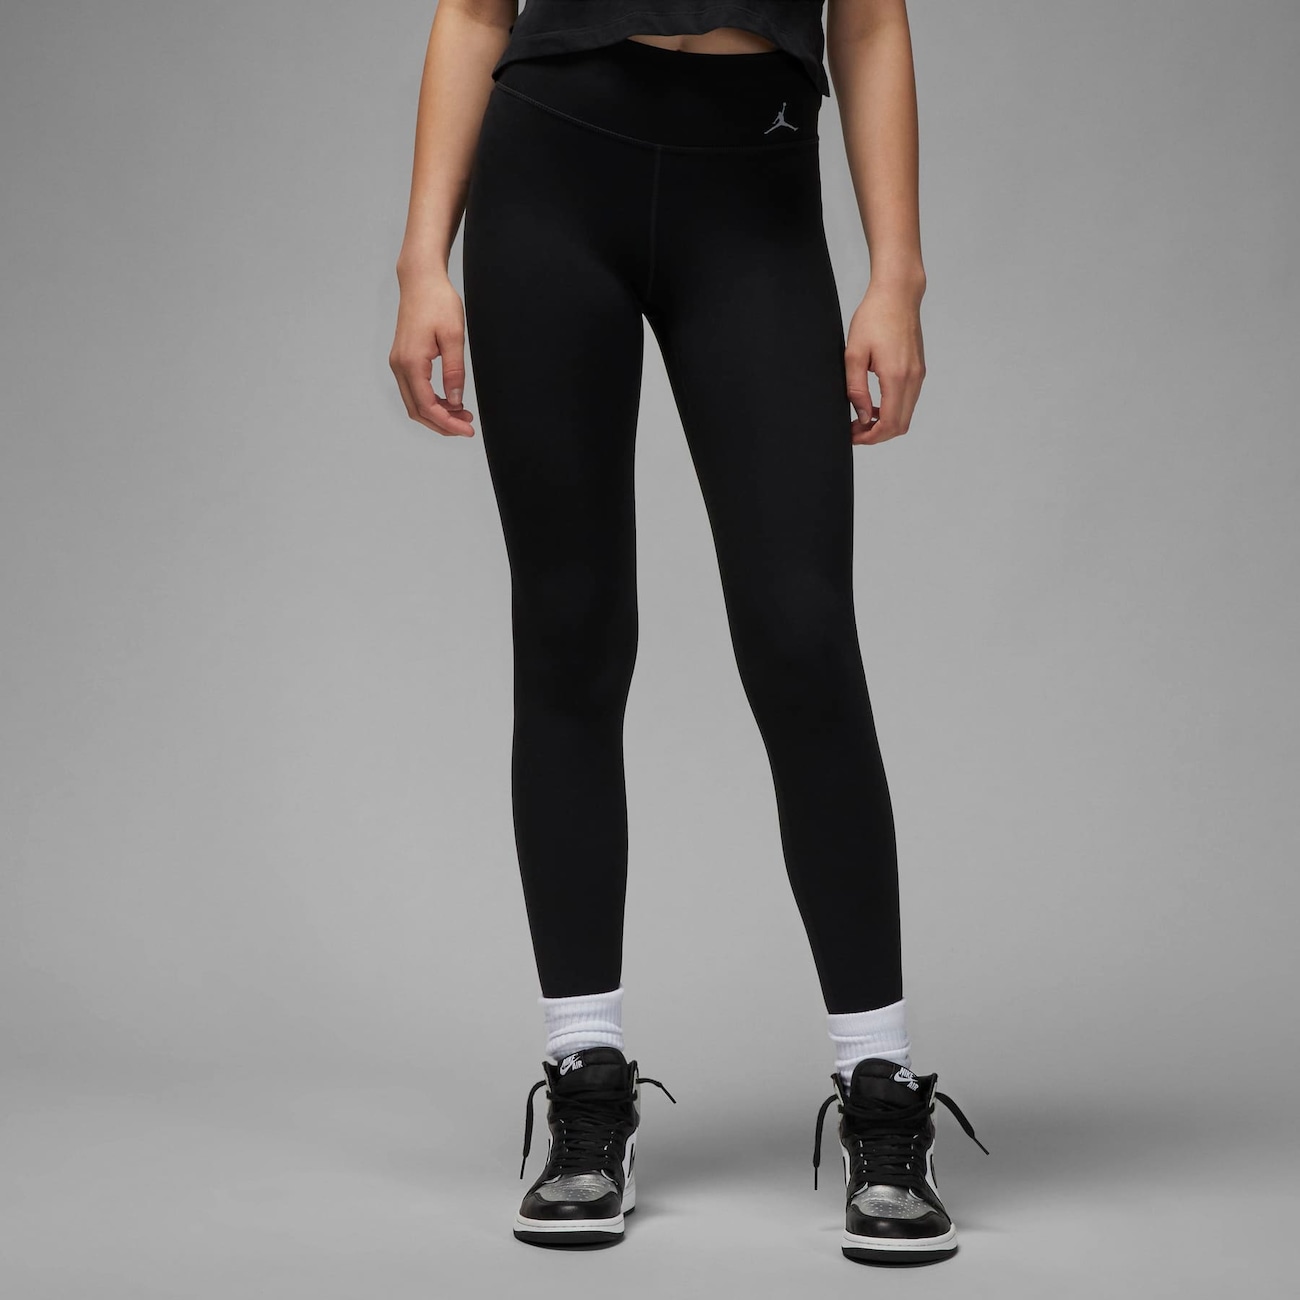 Legging Nike Dri-fit Swoosh Run Feminina